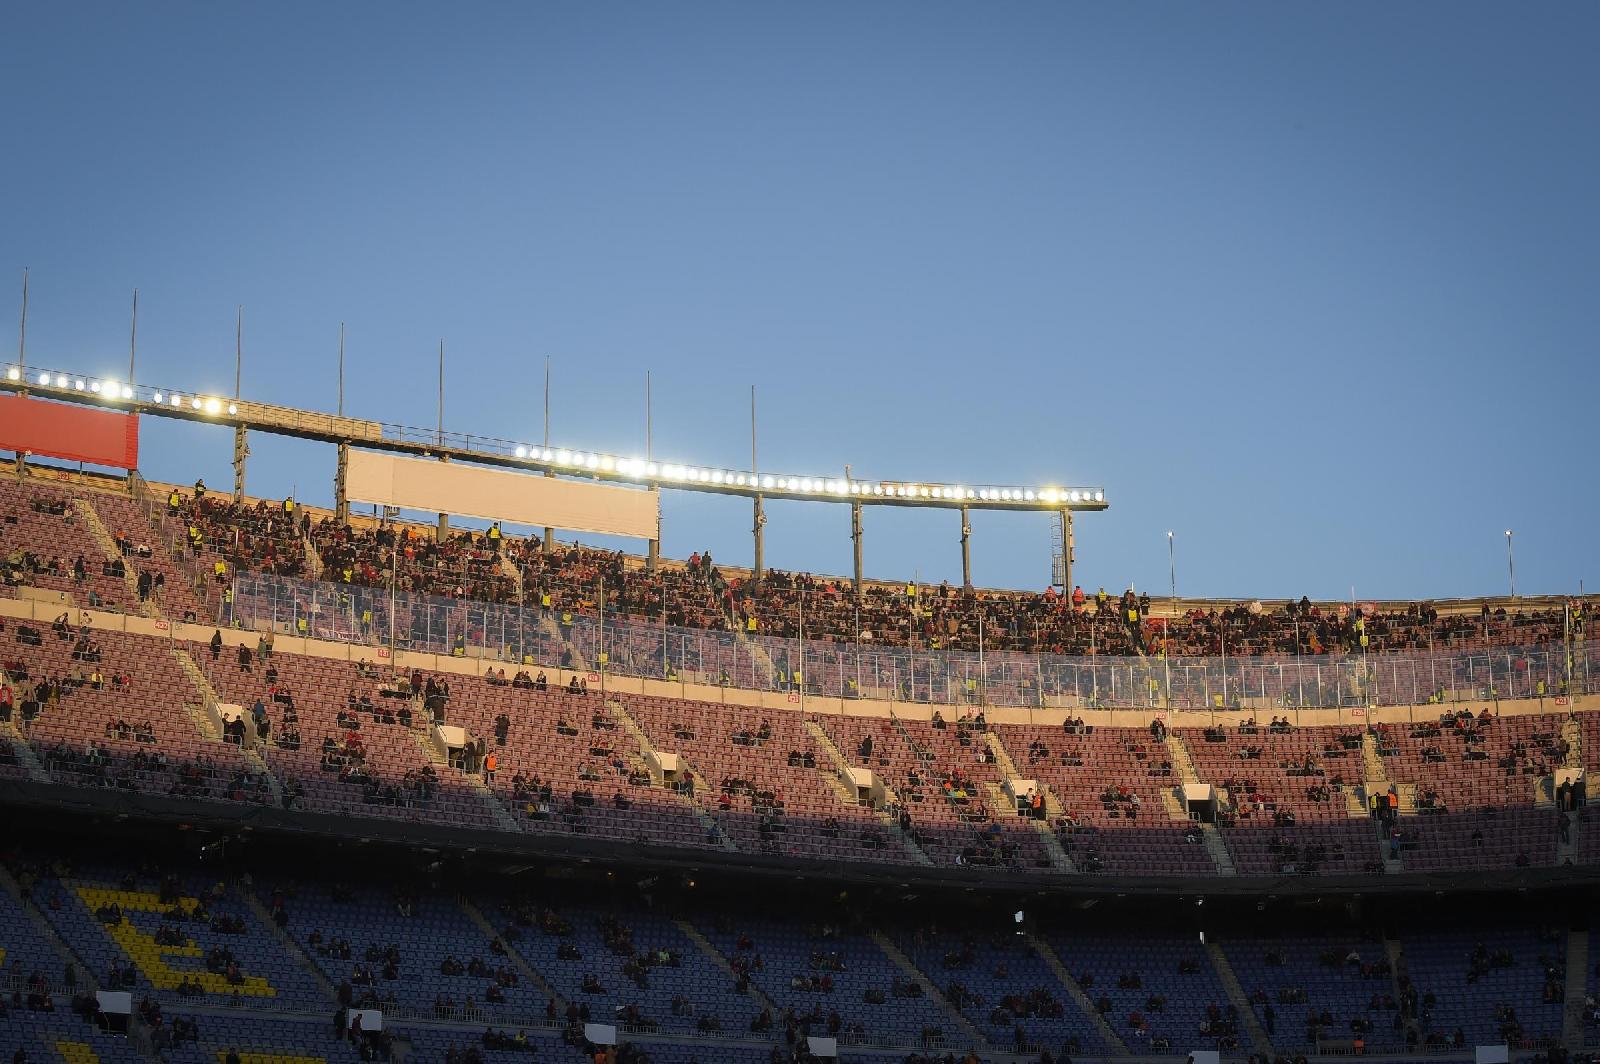 Il settore ospiti del Camp Nou con i romanisti durante la scorsa Champions, con biglietti venduti a 89 euro ©LaPresse